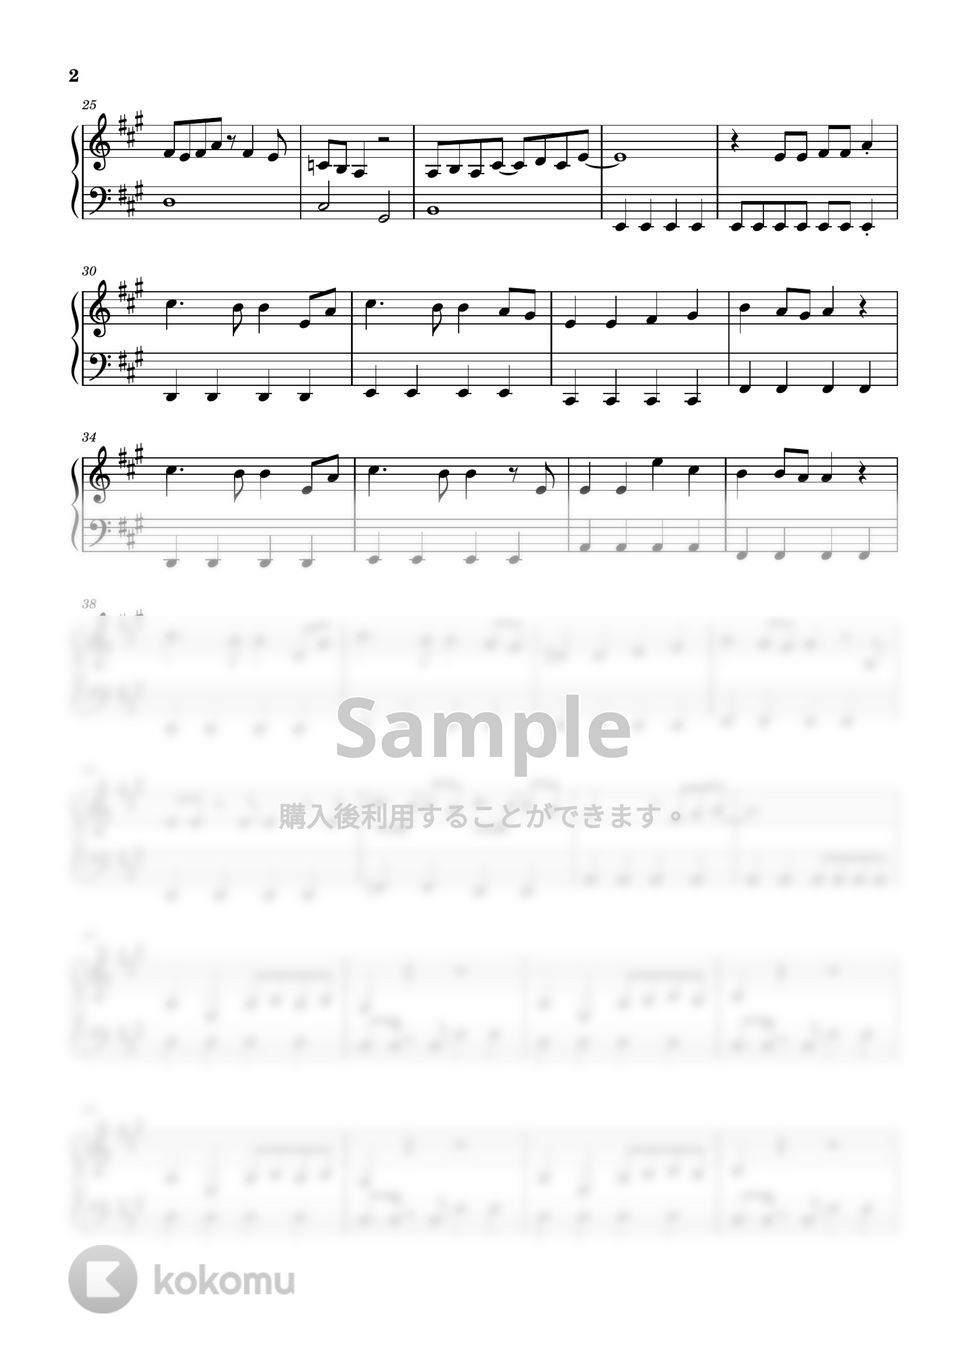 みきとP - 少女レイ (初級ピアノ / ボカロ / みきとP / 少女レイ) by 簡単ボカロピアノch ニキ